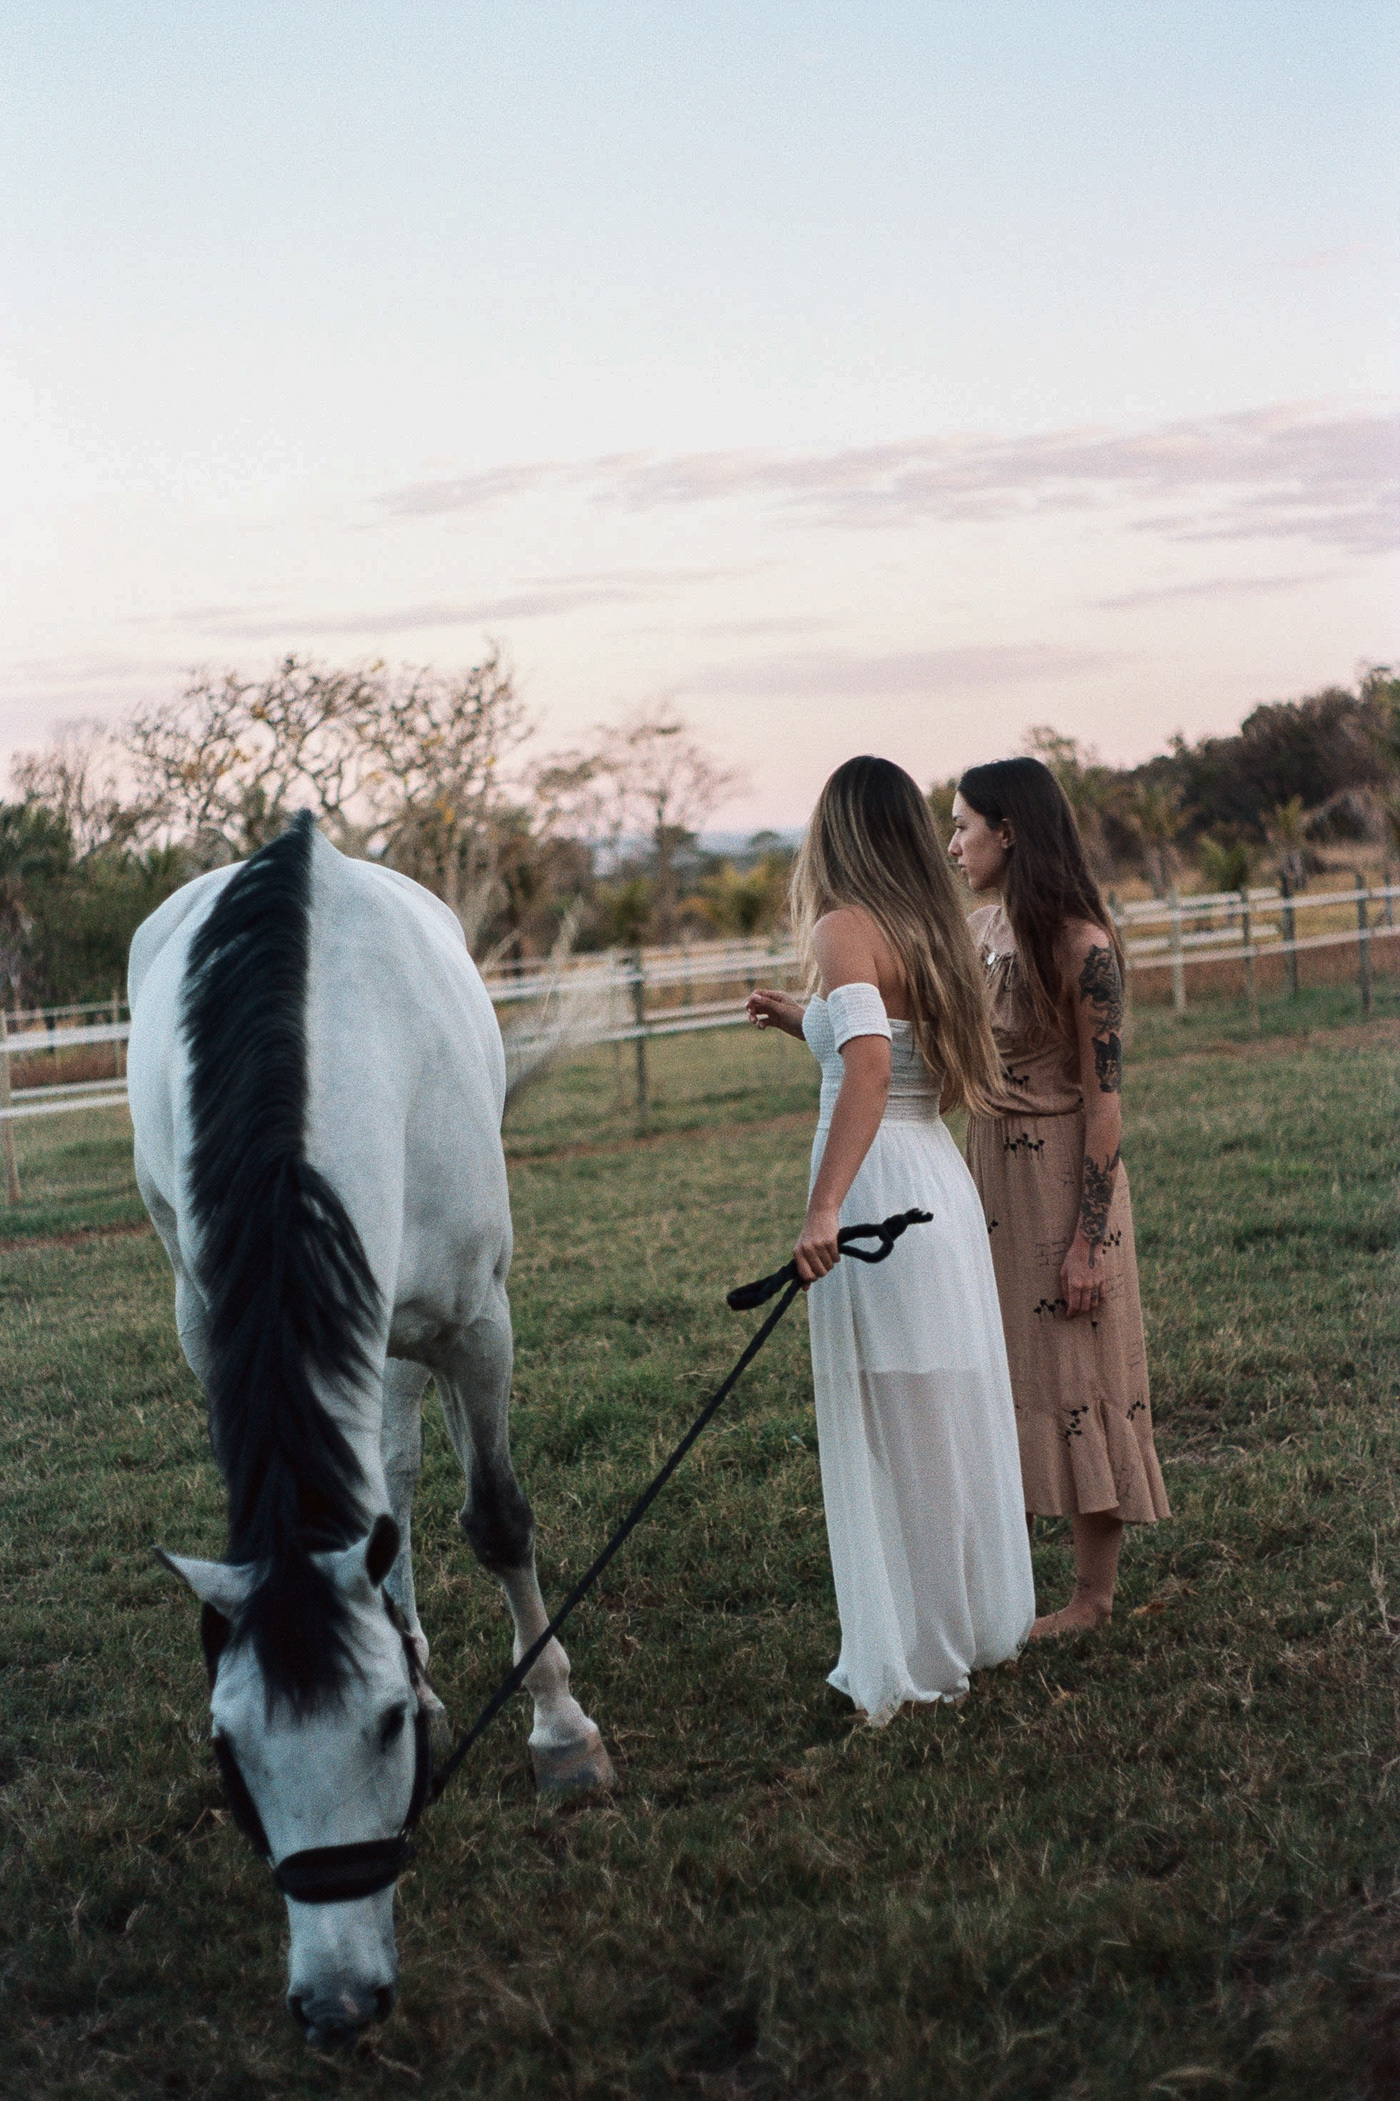 35mm analogic girl girls horse photoshoot